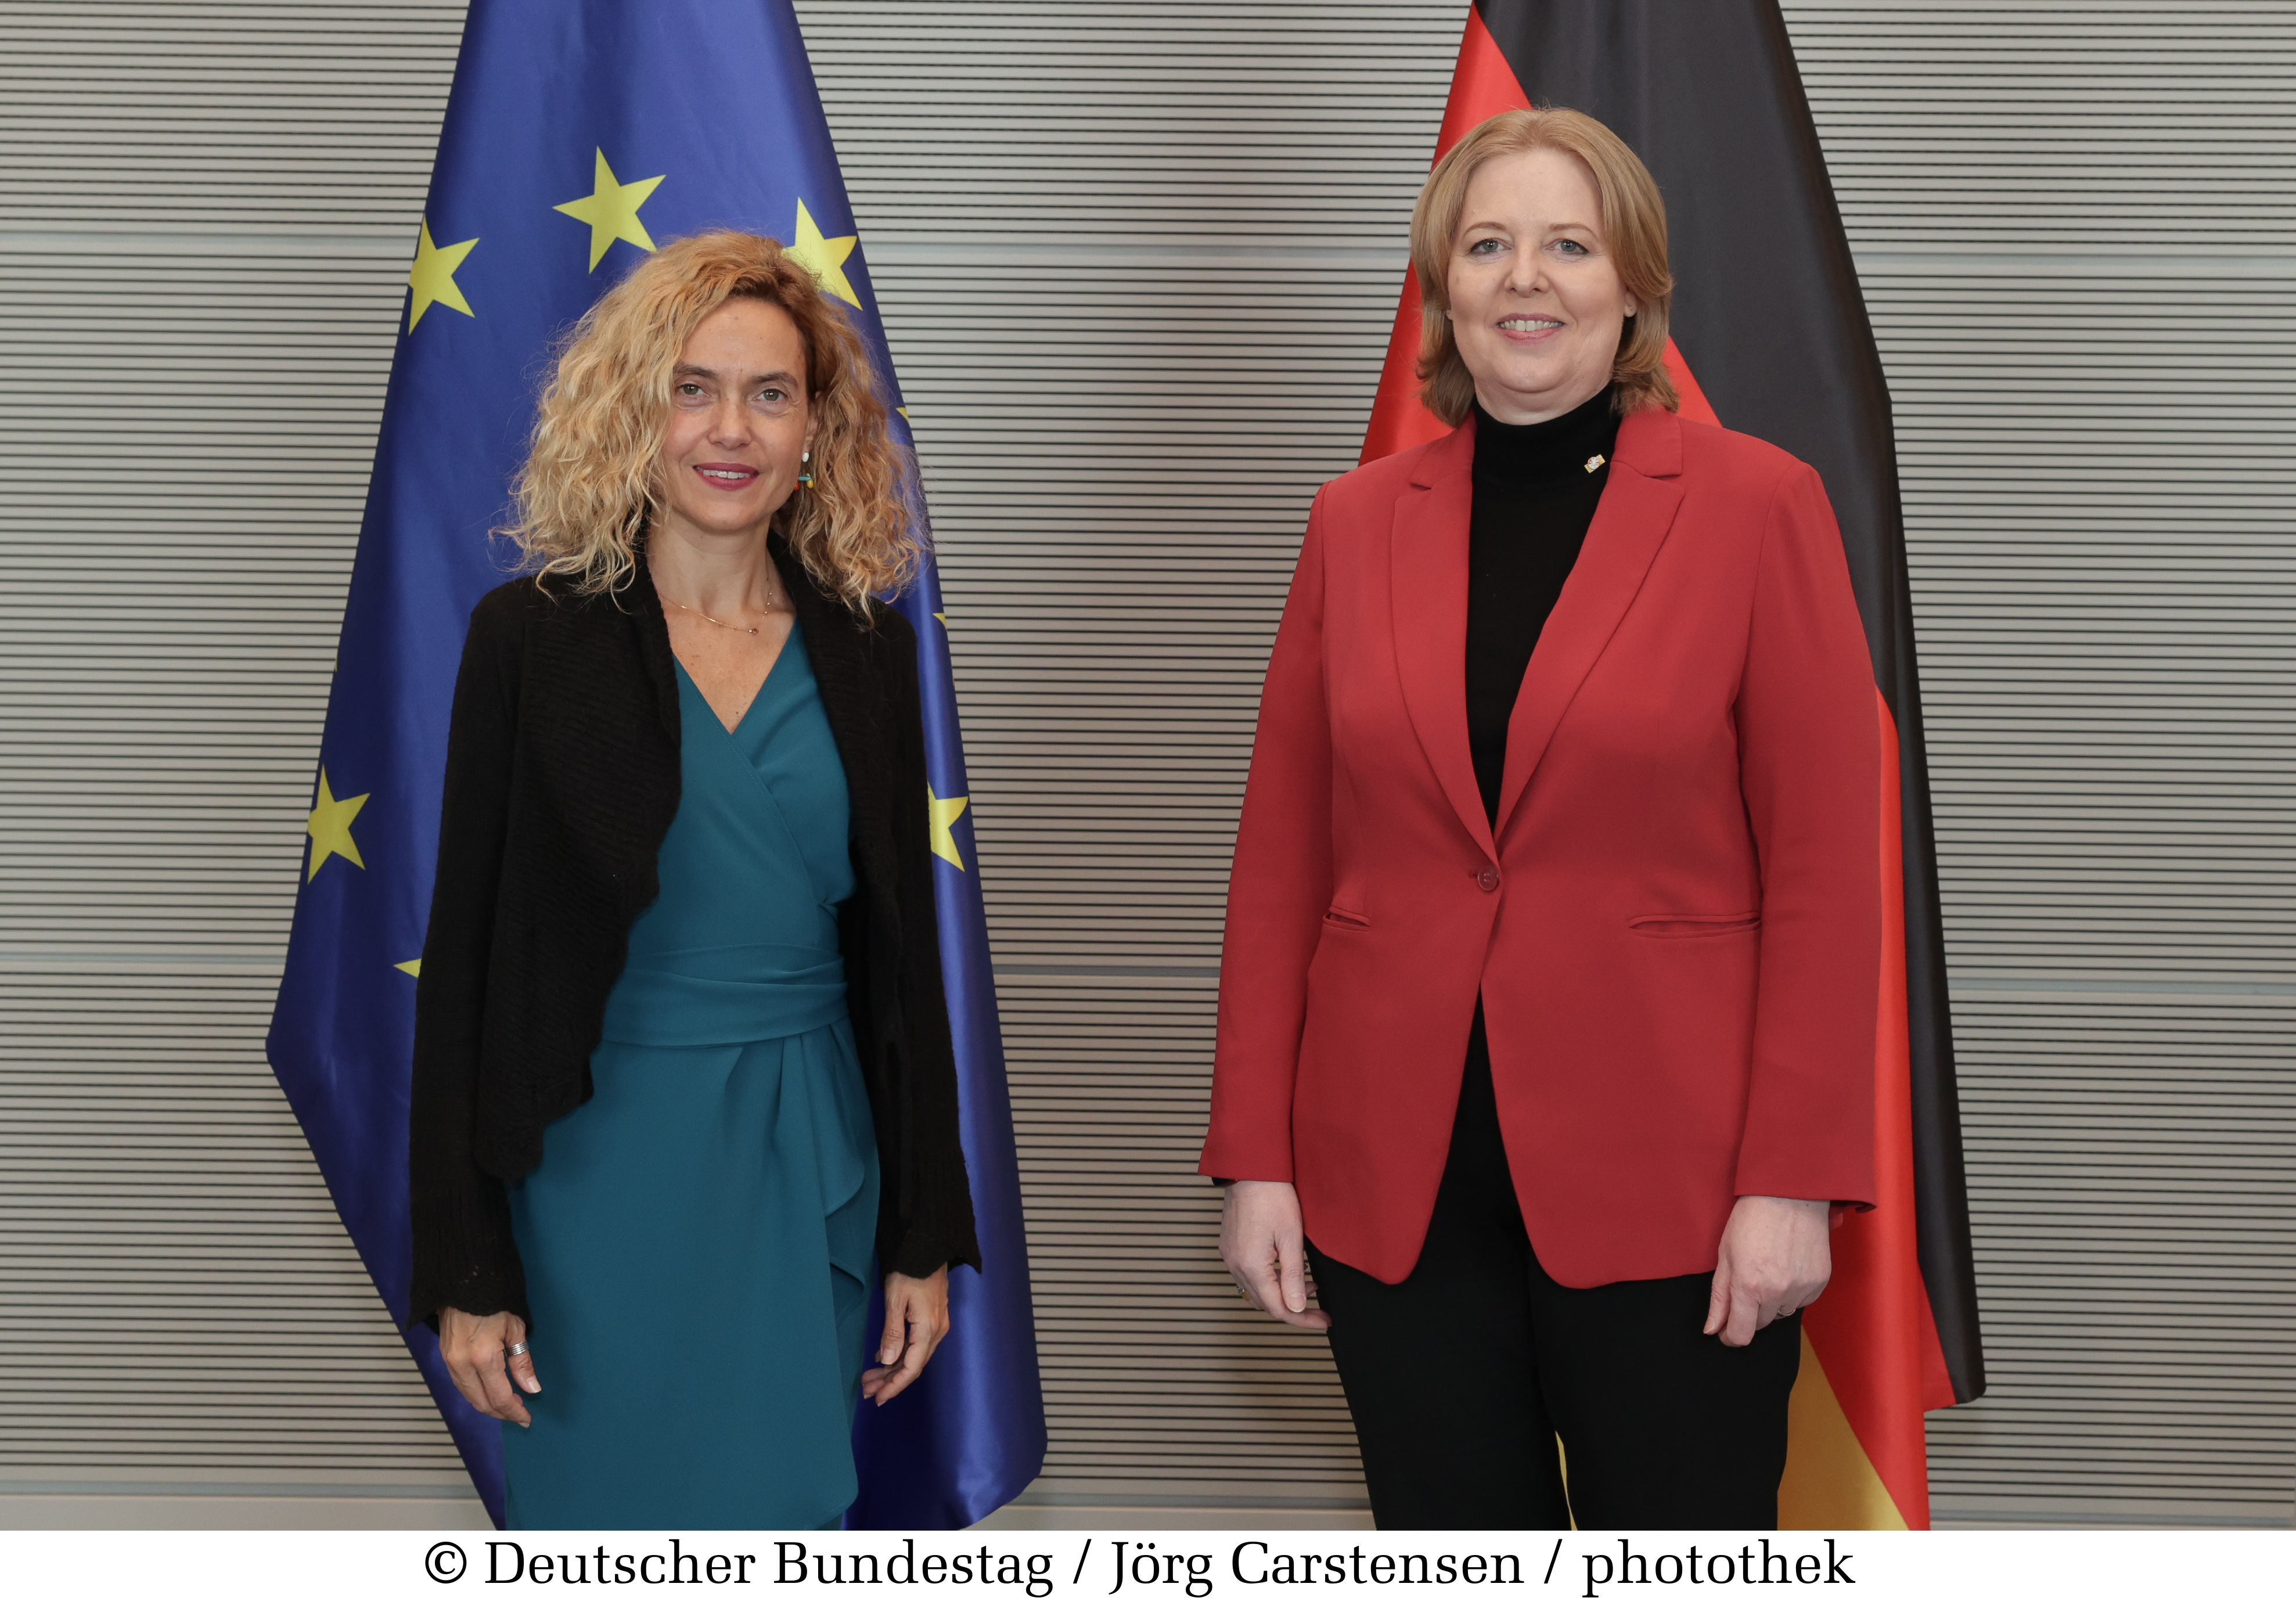 Visita de la presidenta del Congreso de los Diputados, Meritxell Batet, al Parlamento alemán y encuentro con la presidenta del Bundestag, Bärbel Bas